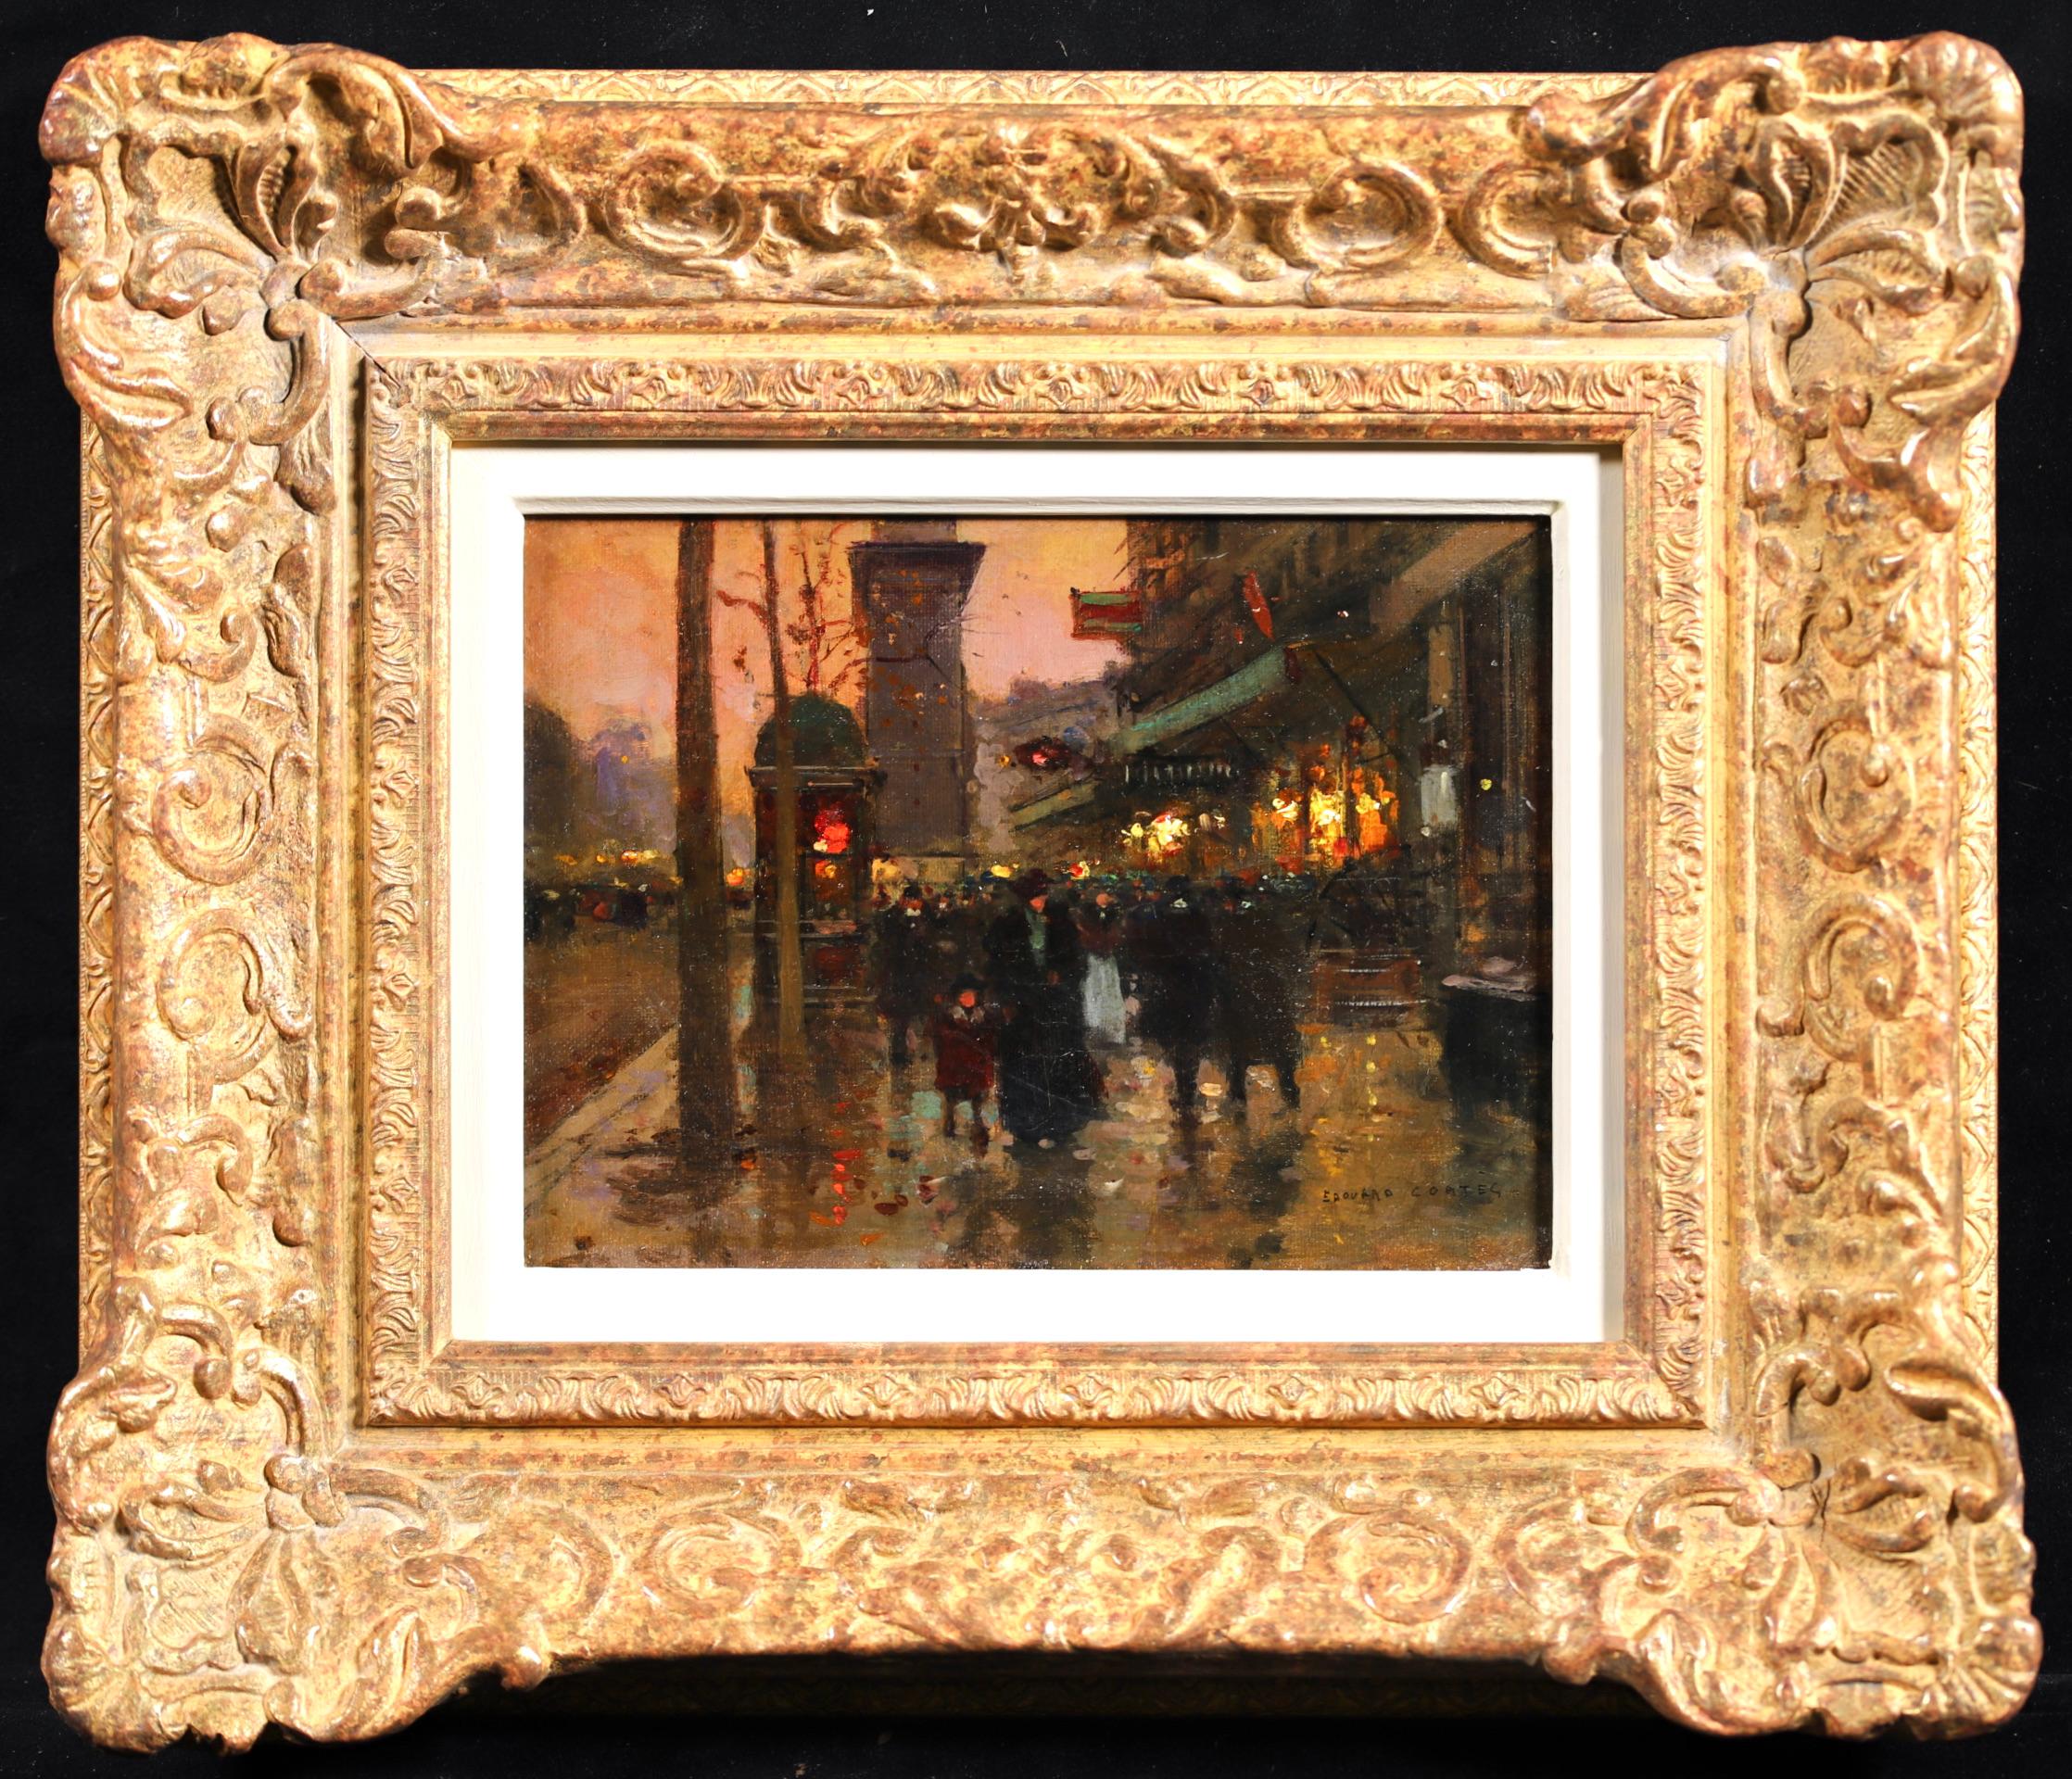 Porte Saint Denis - Le Soir - Impressionist Landscape Oil by Edouard Cortes - Painting by  Édouard Cortès